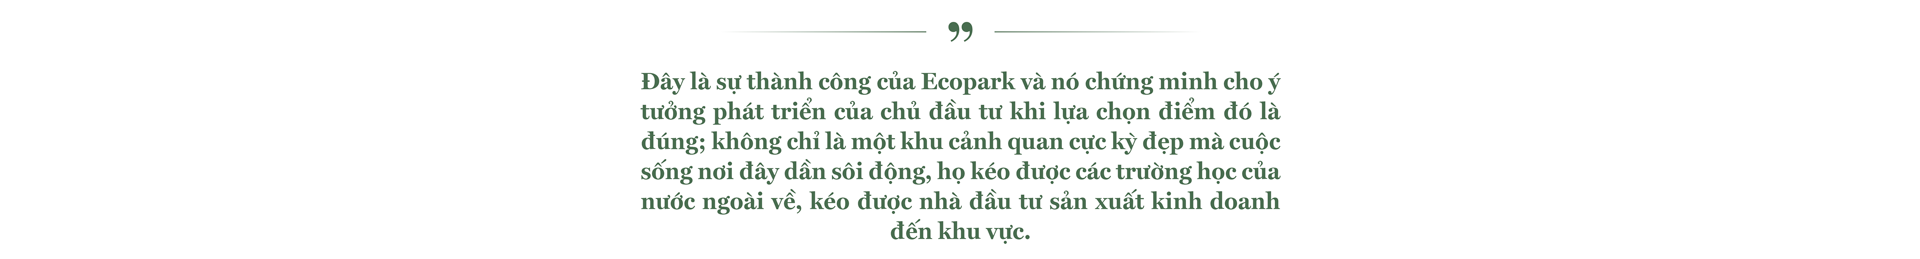 Khát vọng kiến tạo biểu tượng sống mới của nhà sáng lập Ecopark tại miền Nam  - Ảnh 5